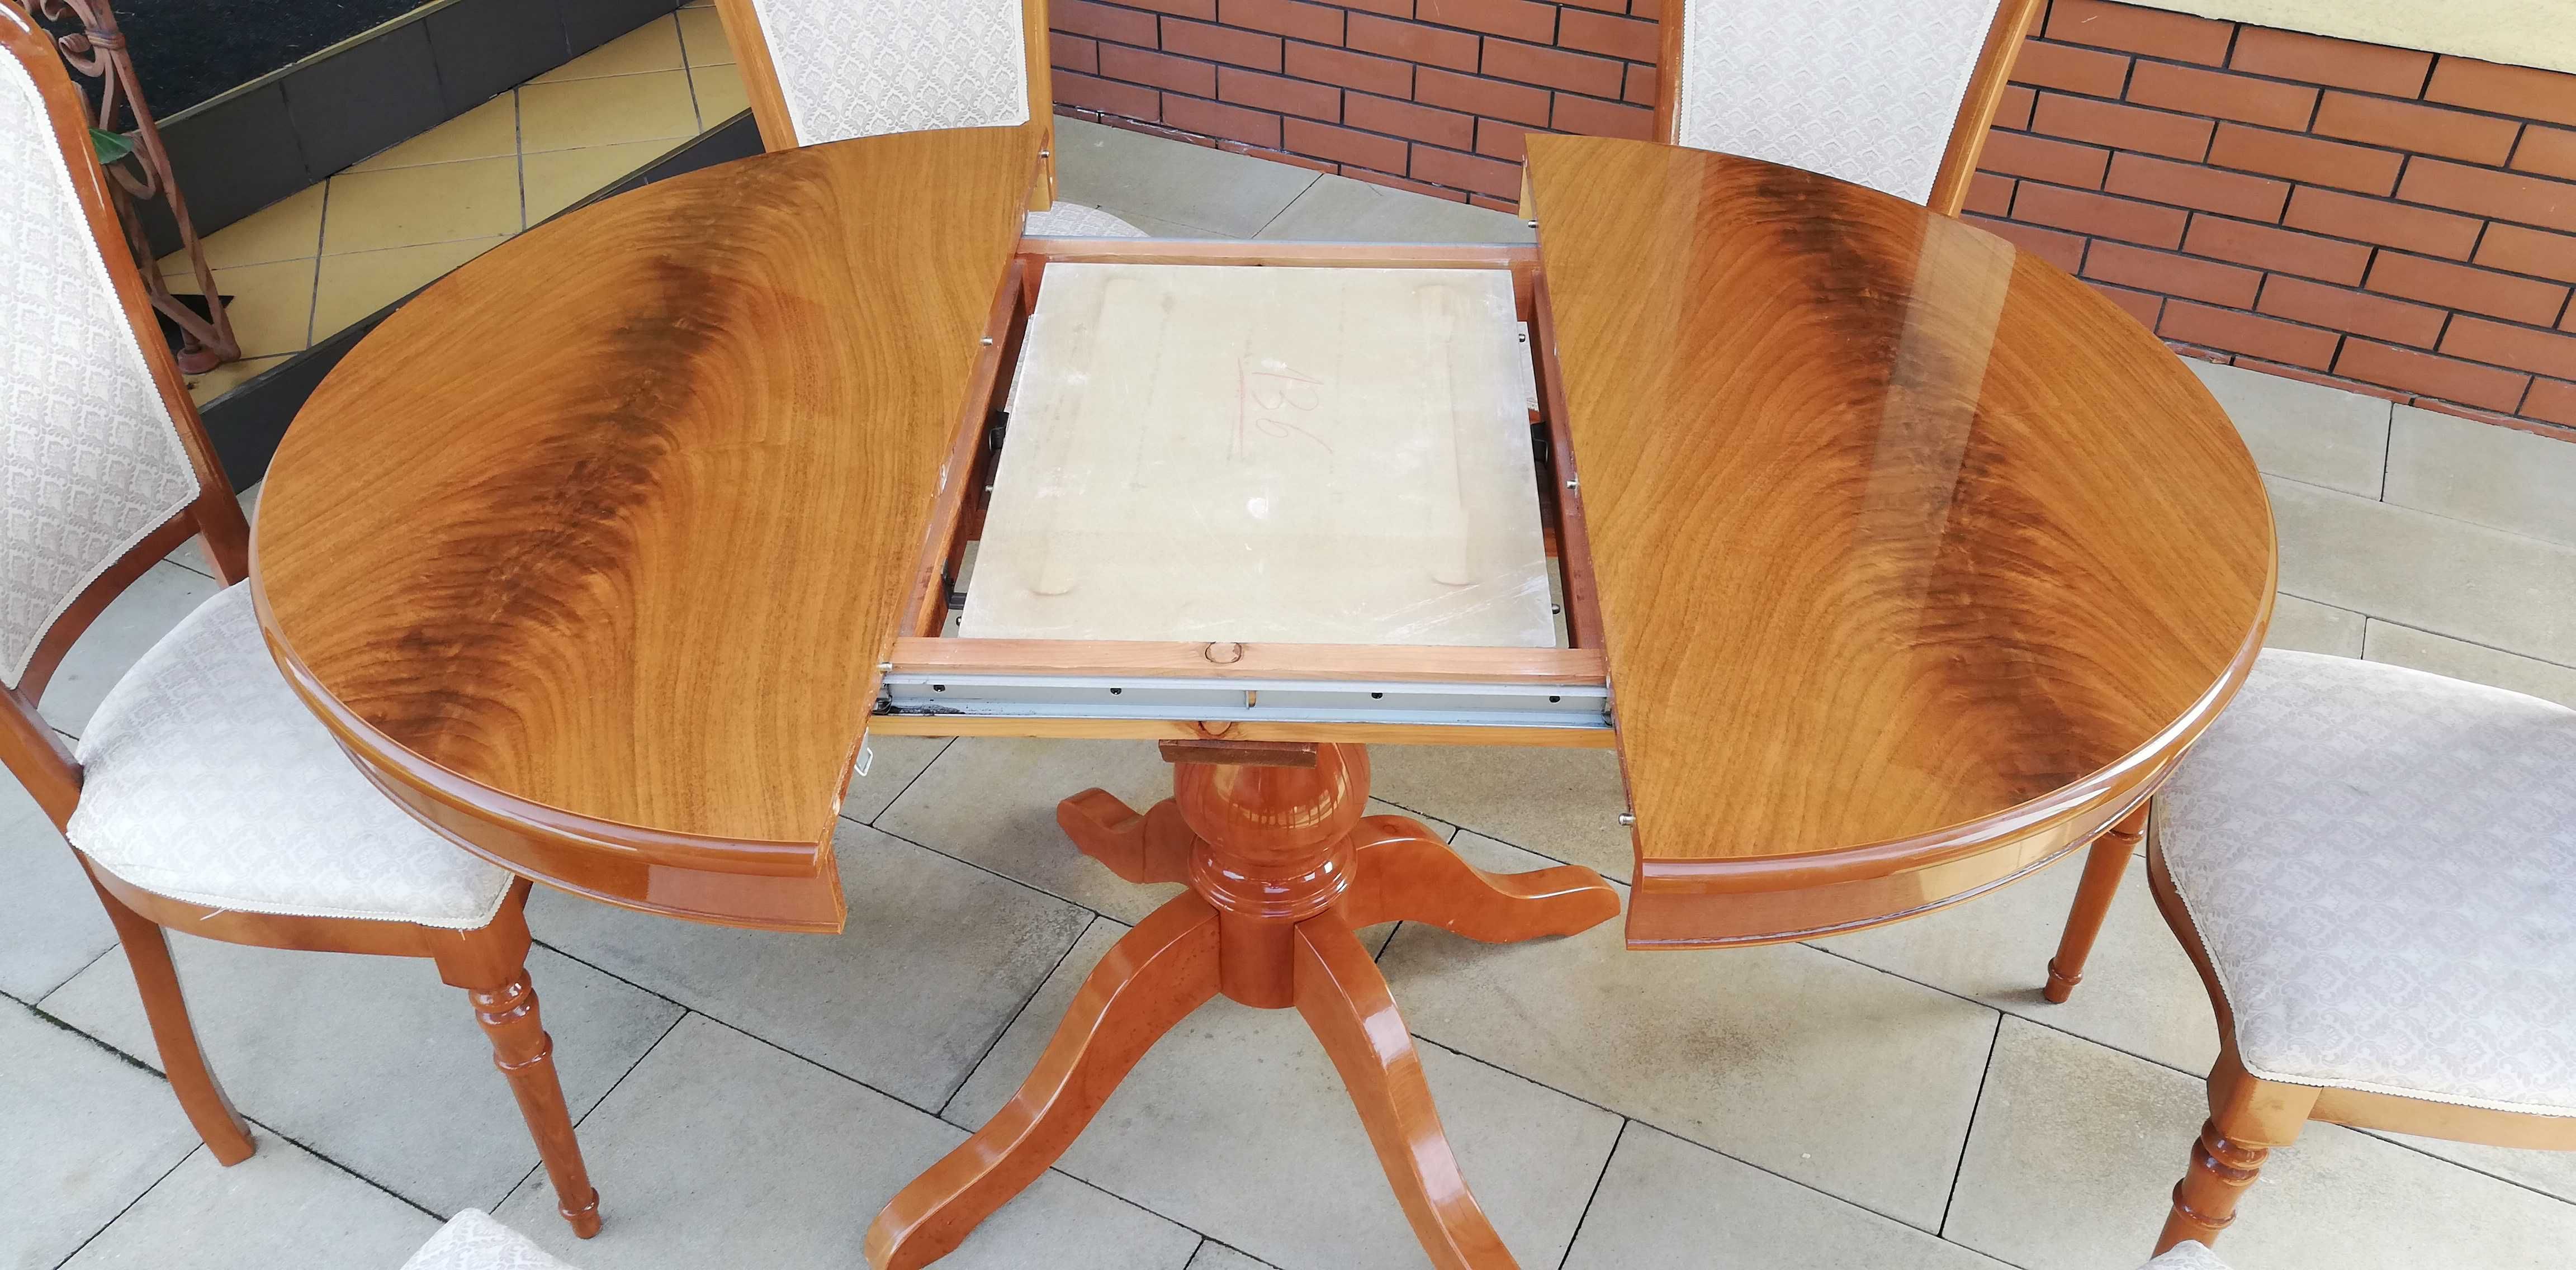 Stół rozkładany okrągły drewniany do krzesła  stolik stylowy